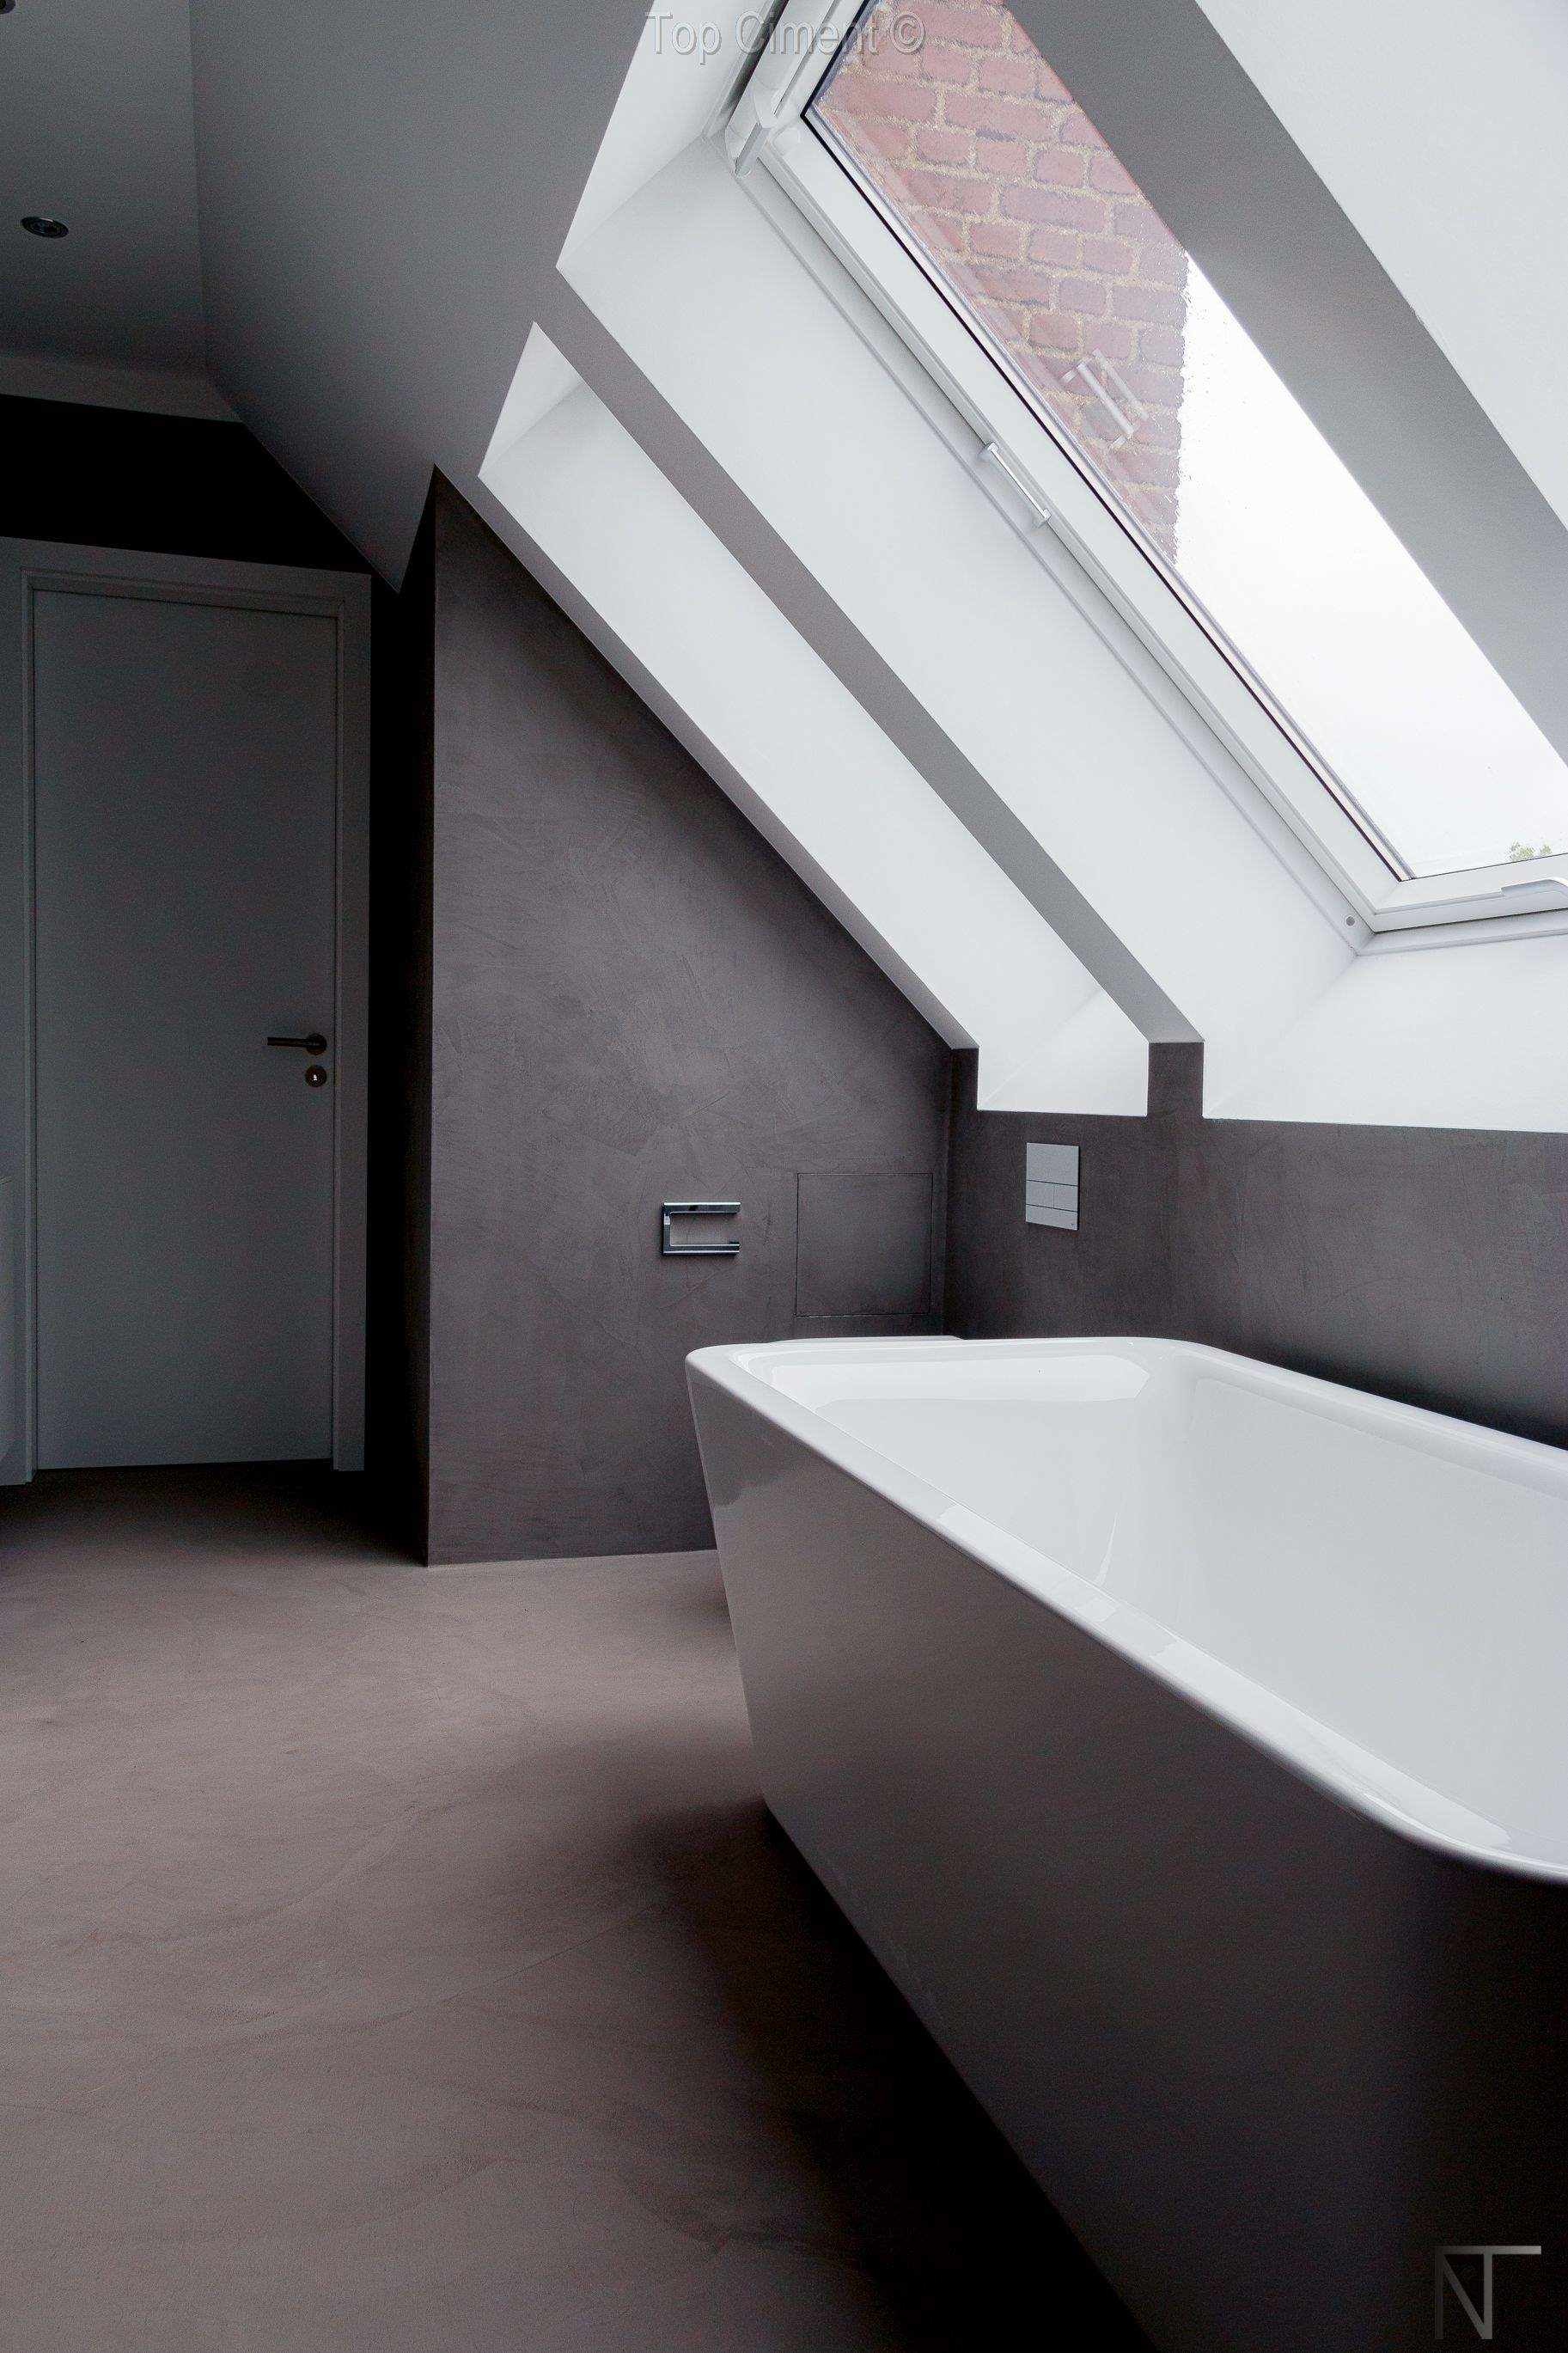 Łazienka z płytkami ceramicznymi odnowiona za pomocą mikrocementu na ścianach i podłodze